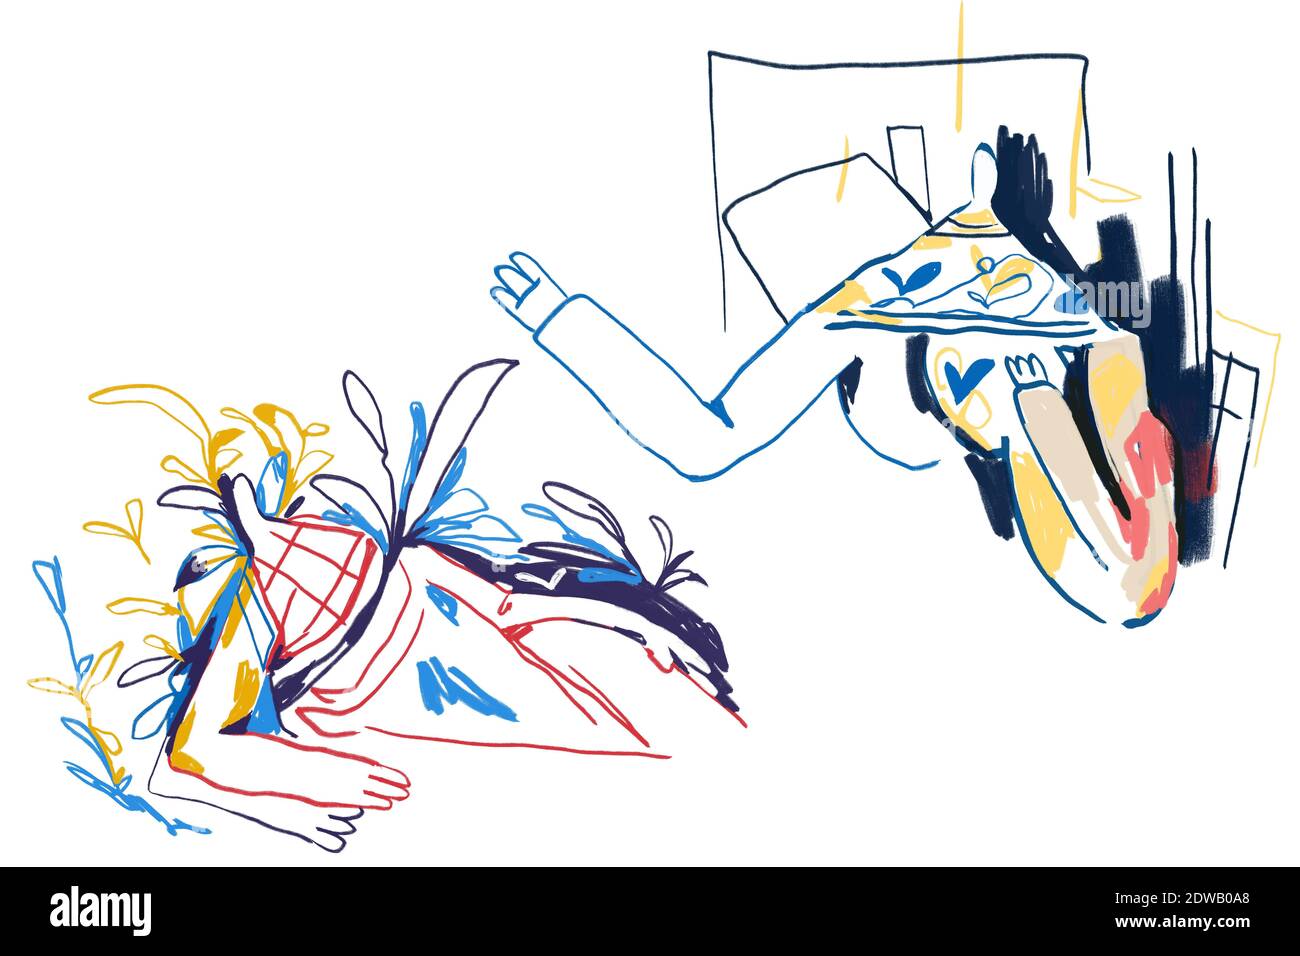 Art de ligne et personnes abstraites colorées, expressionnisme et style d'art Keith Haring. Deux personnes se voient. Dessin de peinture avec ligne de couleur et est Banque D'Images